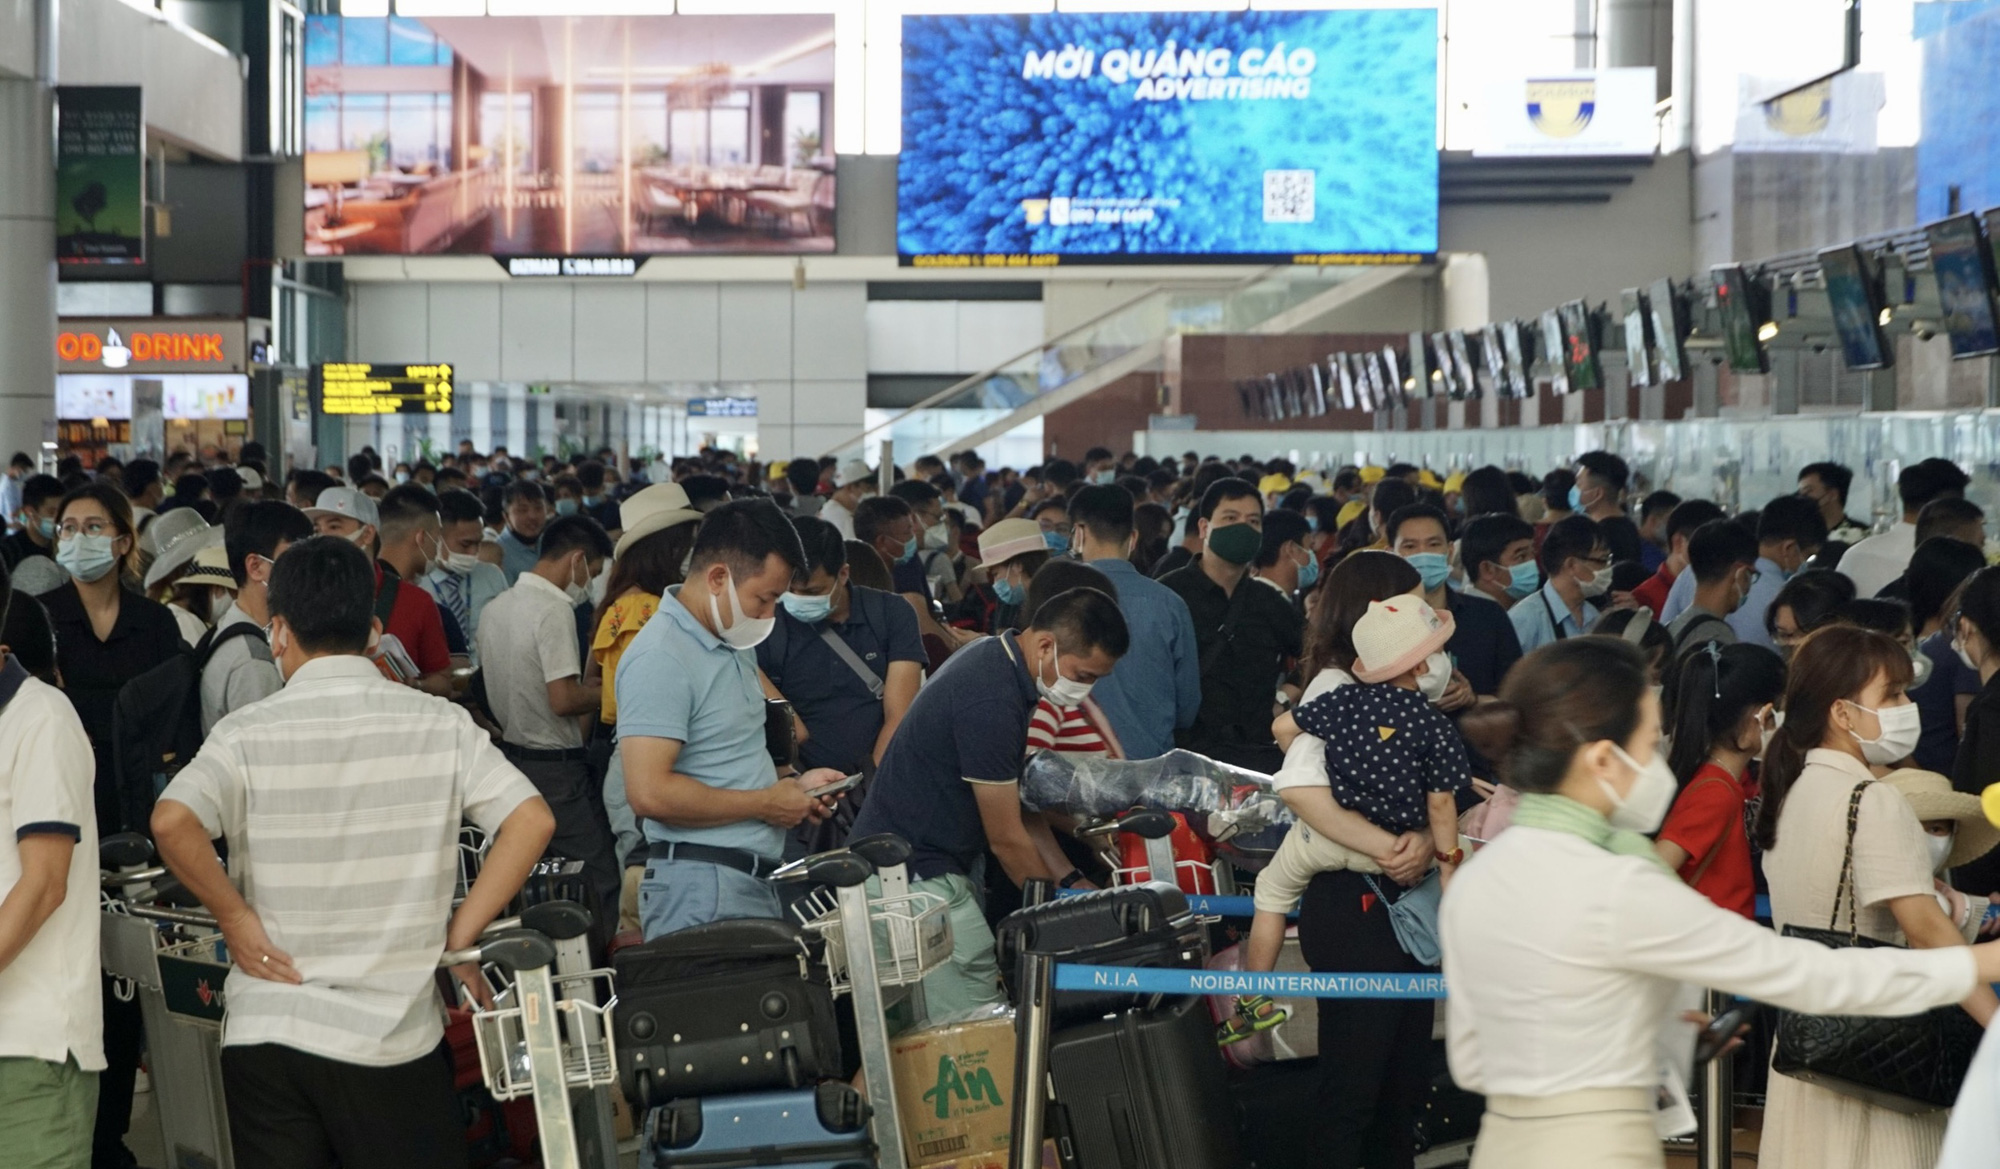 Sân bay Nội Bài dự kiến đón 80.000 khách/ngày dịp nghỉ lễ Quốc khánh, hành khách cần lưu ý những gì khi đi tàu bay? - Ảnh 1.